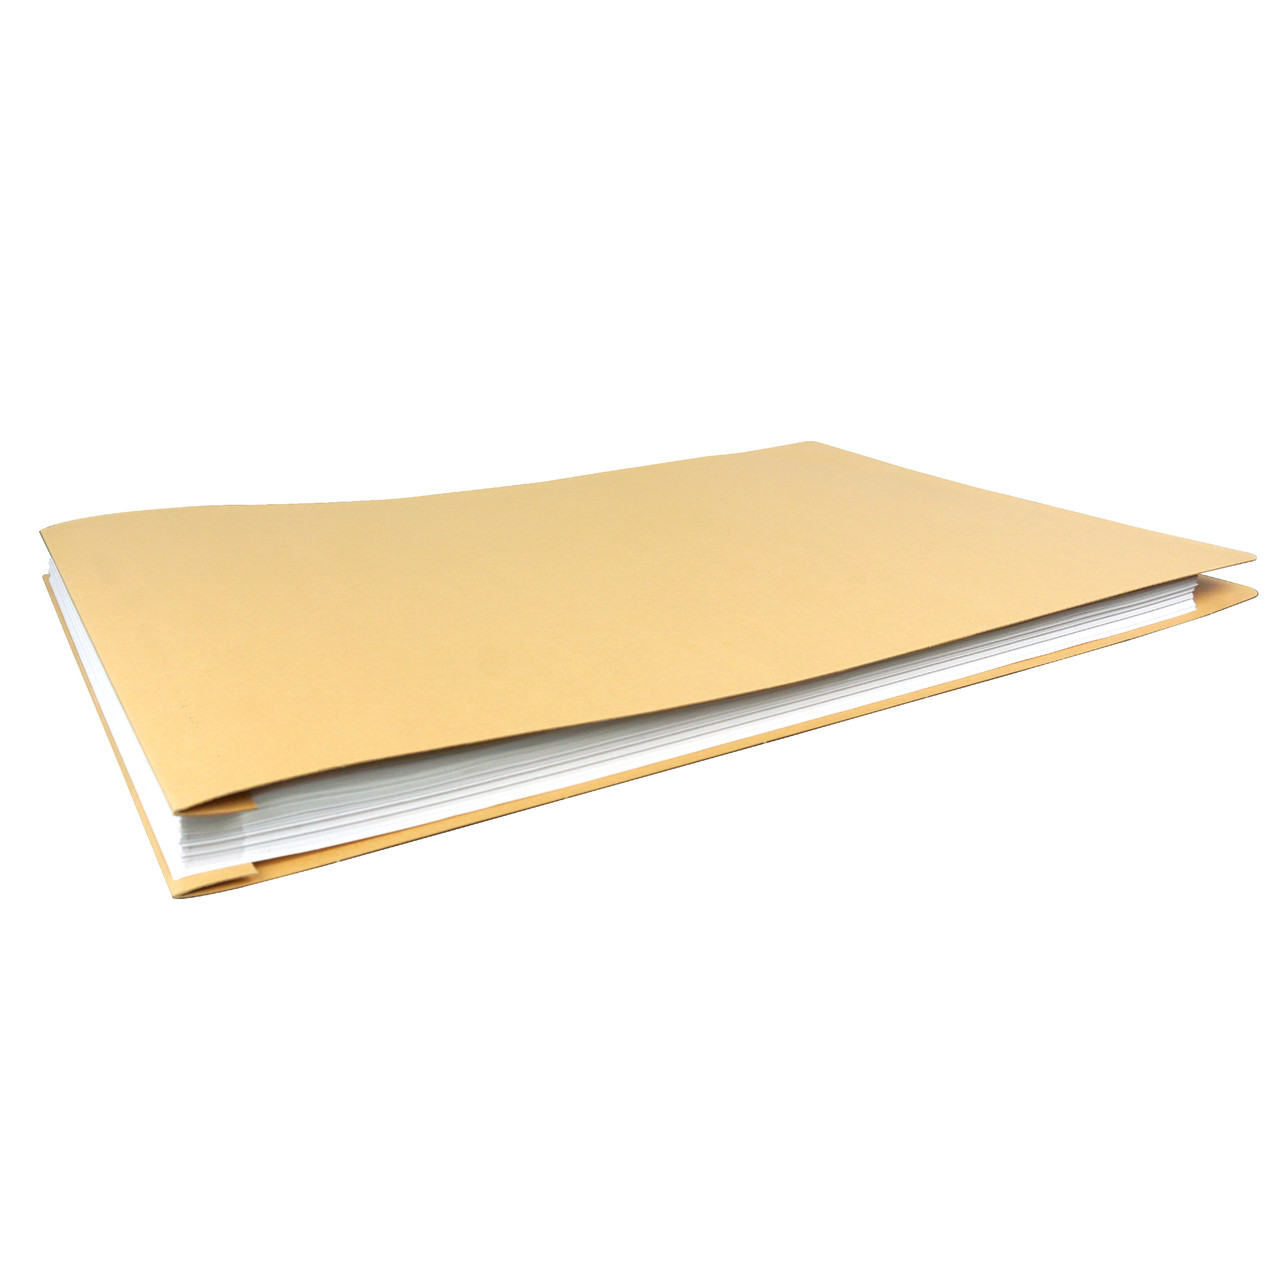 10 Pack of 11x17 Landscape Pressboard Presentation Binder Folder, Blue Fiberboard Report Cover with Metal Prong Paper Fastener